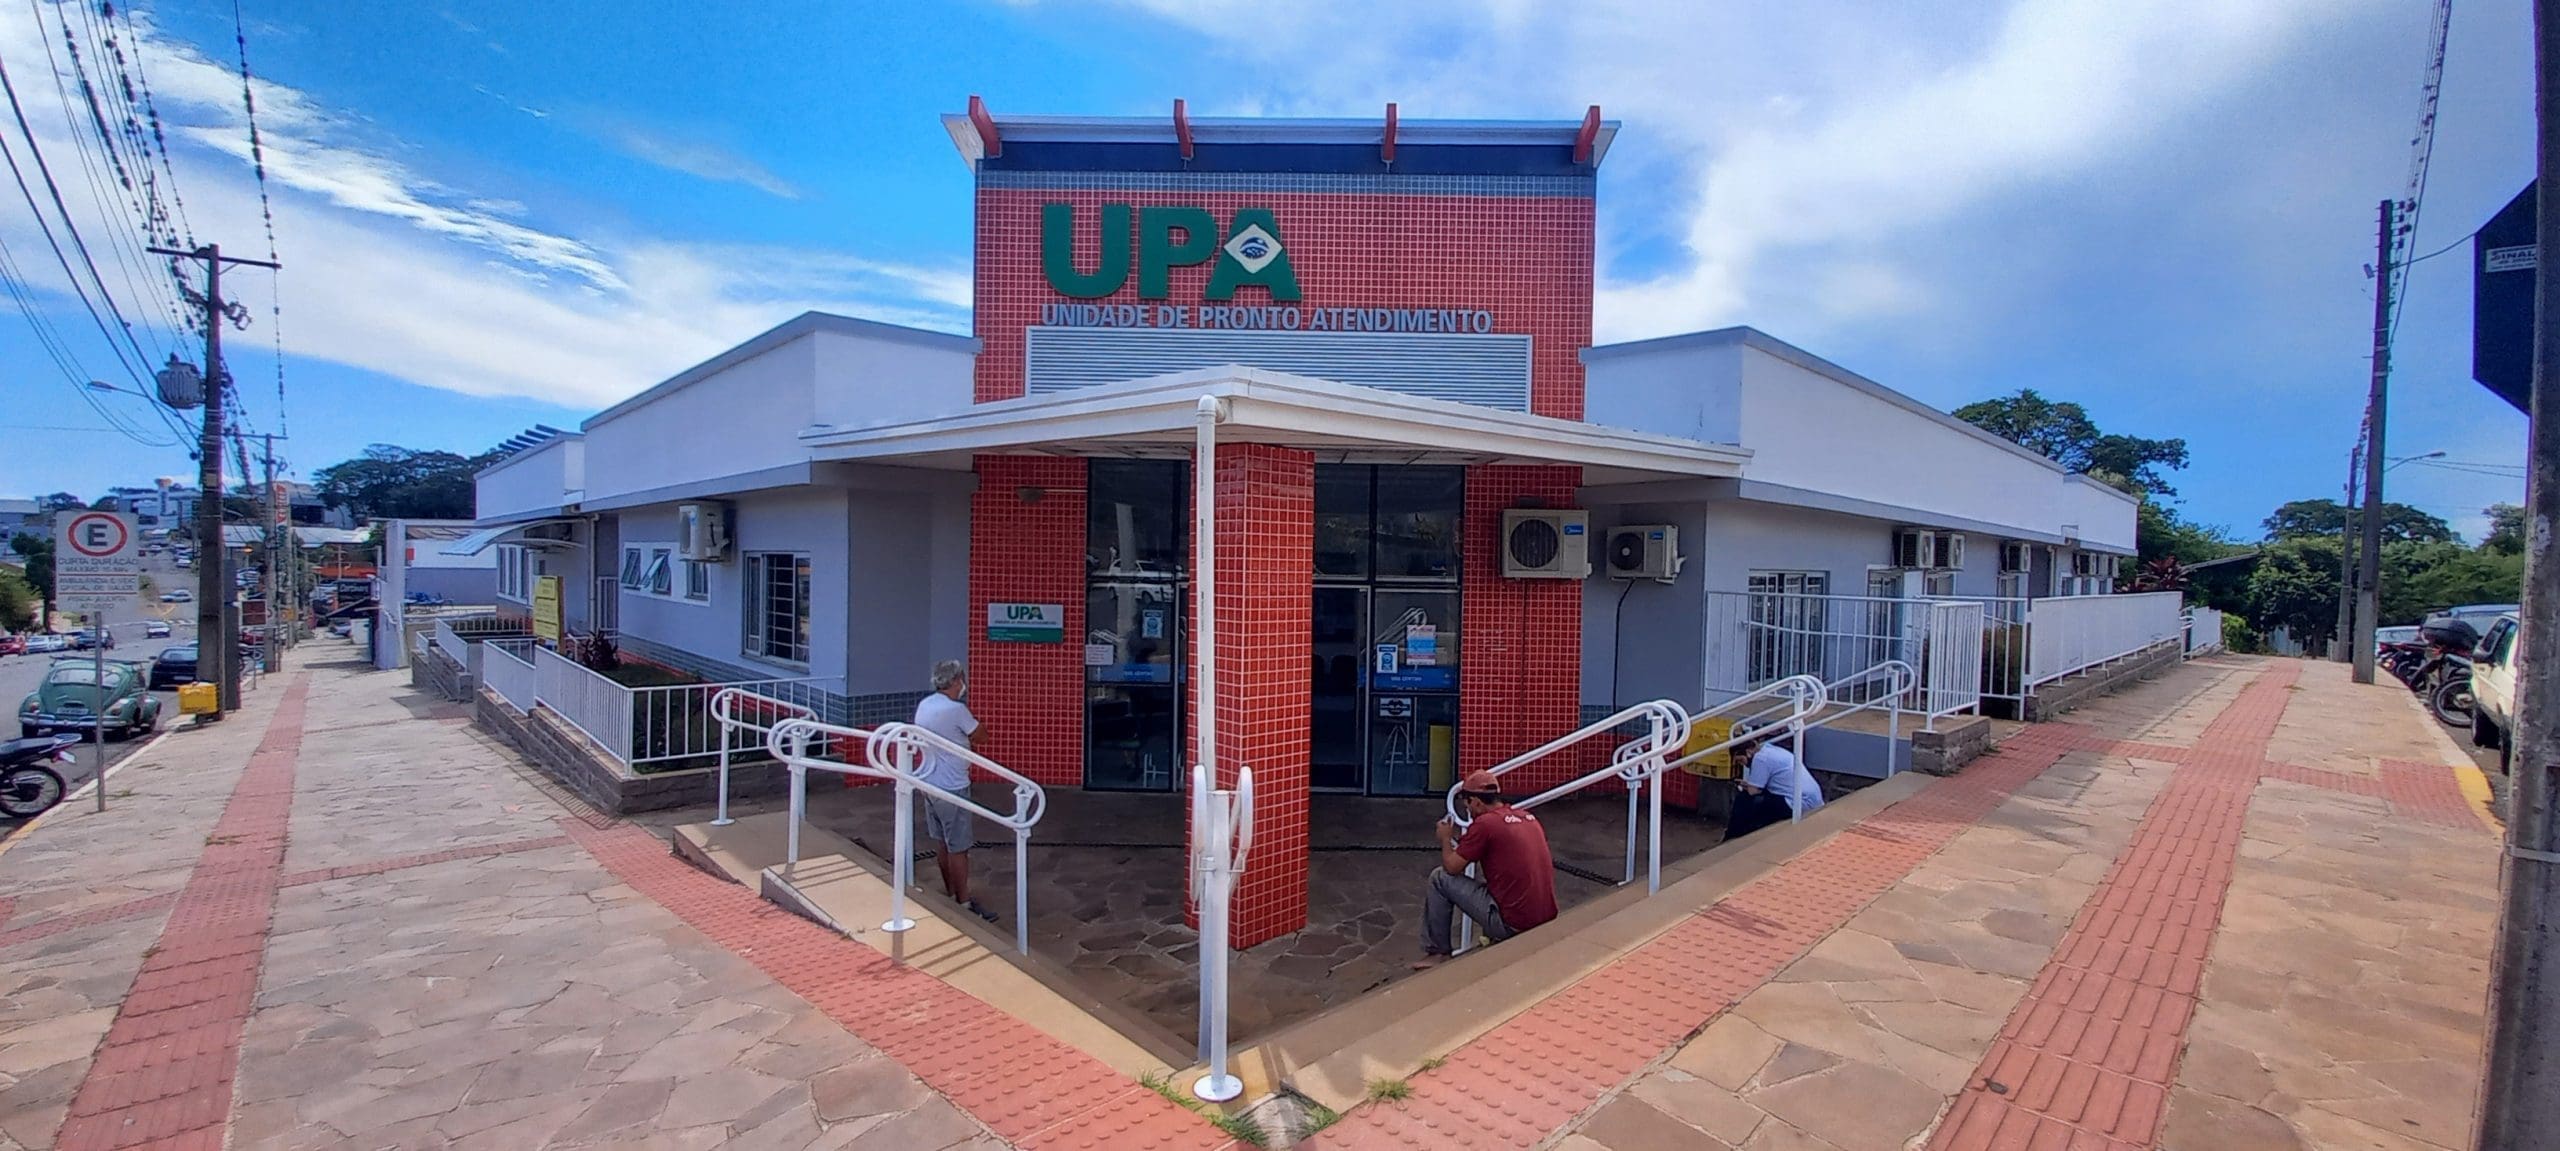 UPA Centro scaled